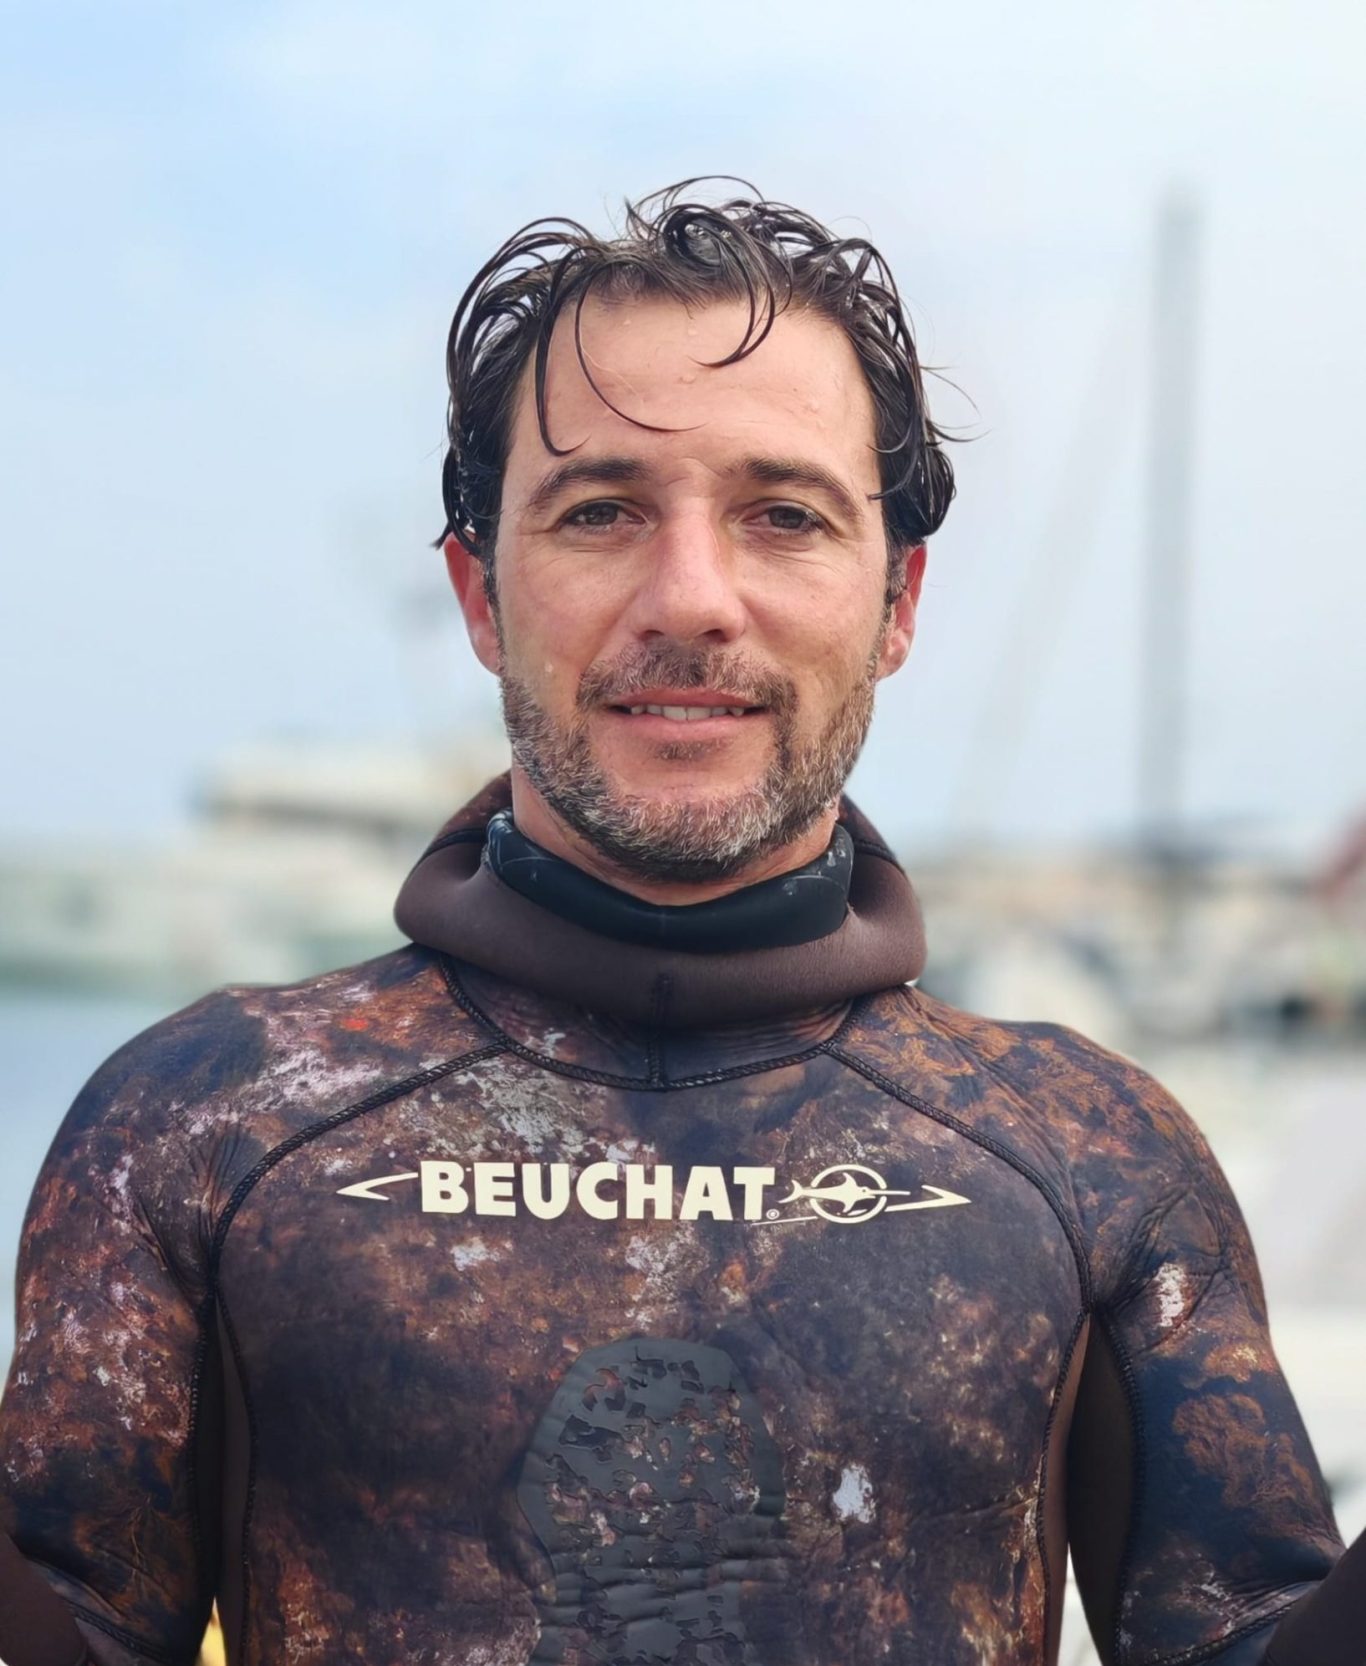 Esplora il mondo dell'apnea e della pesca subacquea con Diego D'Alessandro, campione e istruttore riconosciuto. Scopri la sua carriera di successo, la passione didattica e l'approccio unico che lo rendono un'icona nel panorama subacqueo.